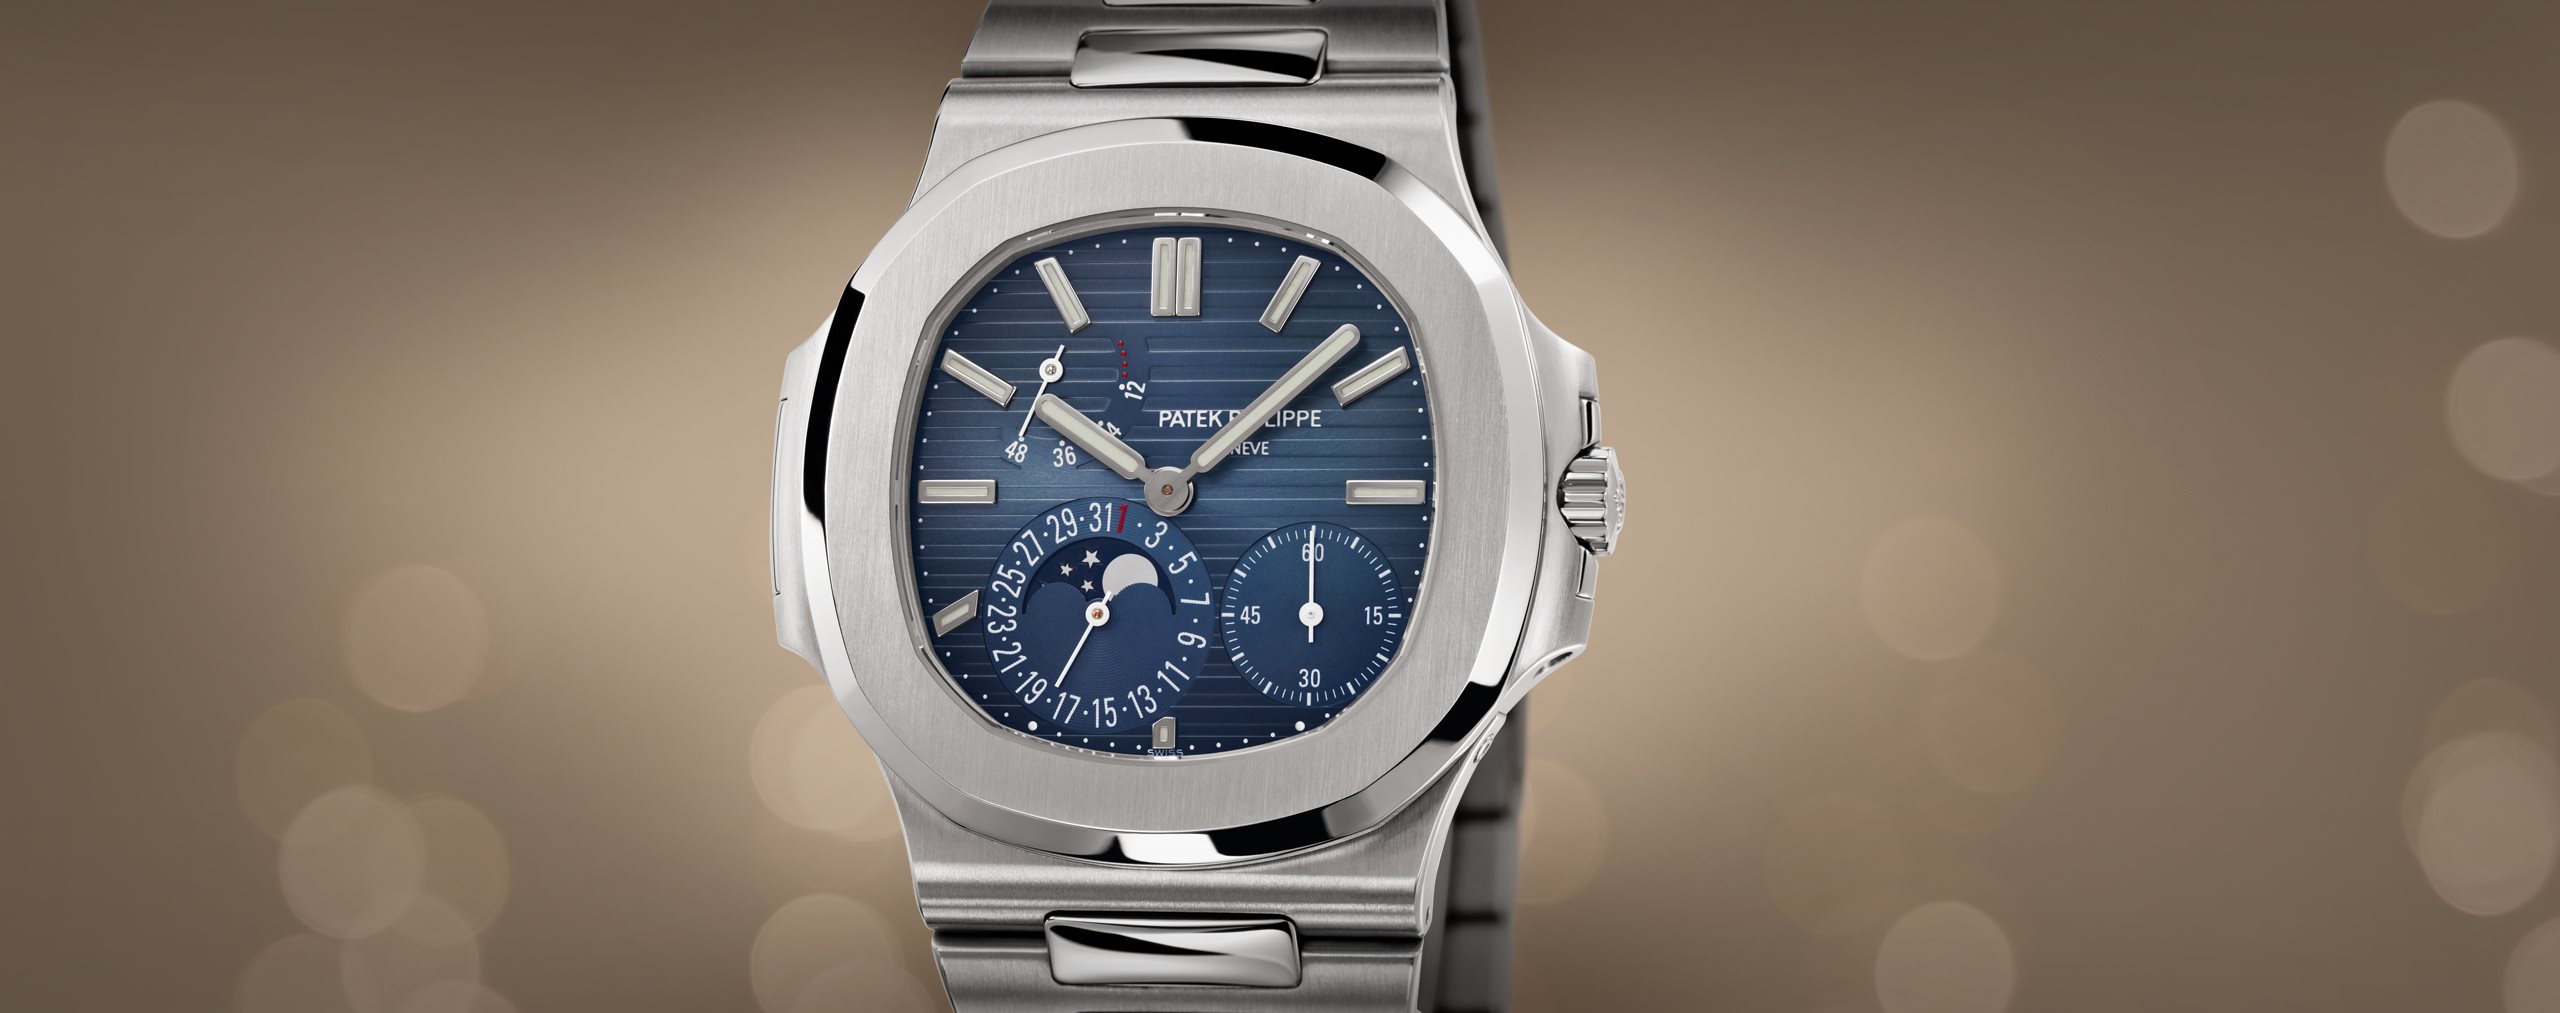 Dhgate Replica Rolex Watch